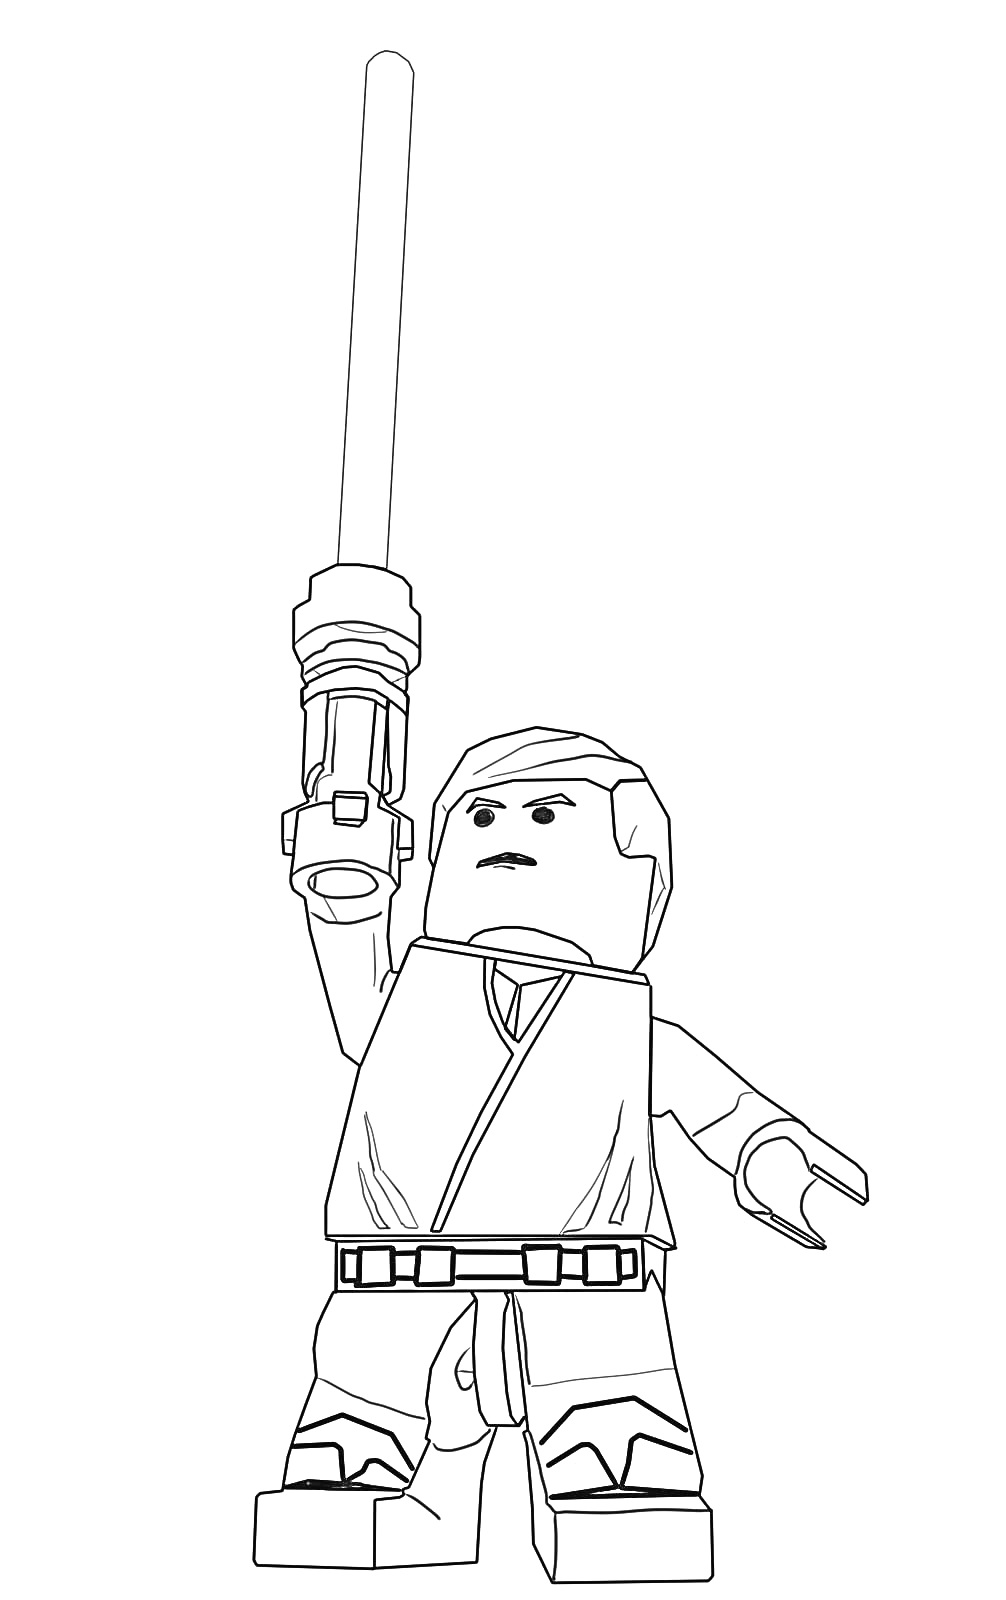 LEGO фигурка человека с мечом в вытянутой руке